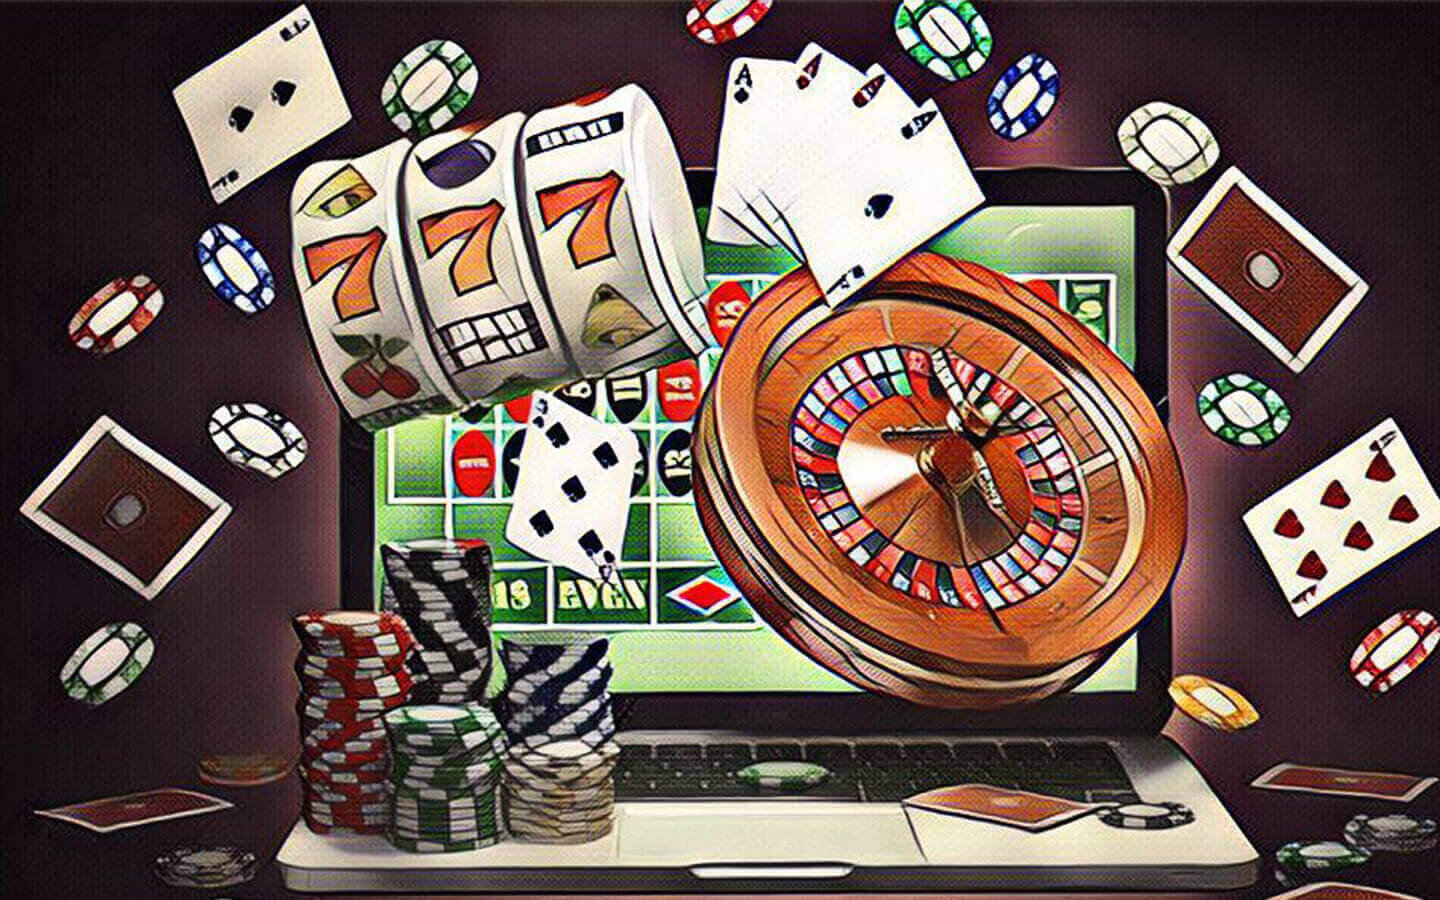 De geschiedenis van gokken in de wereld en België - Hoe zijn ze ontstaan? Spel proces